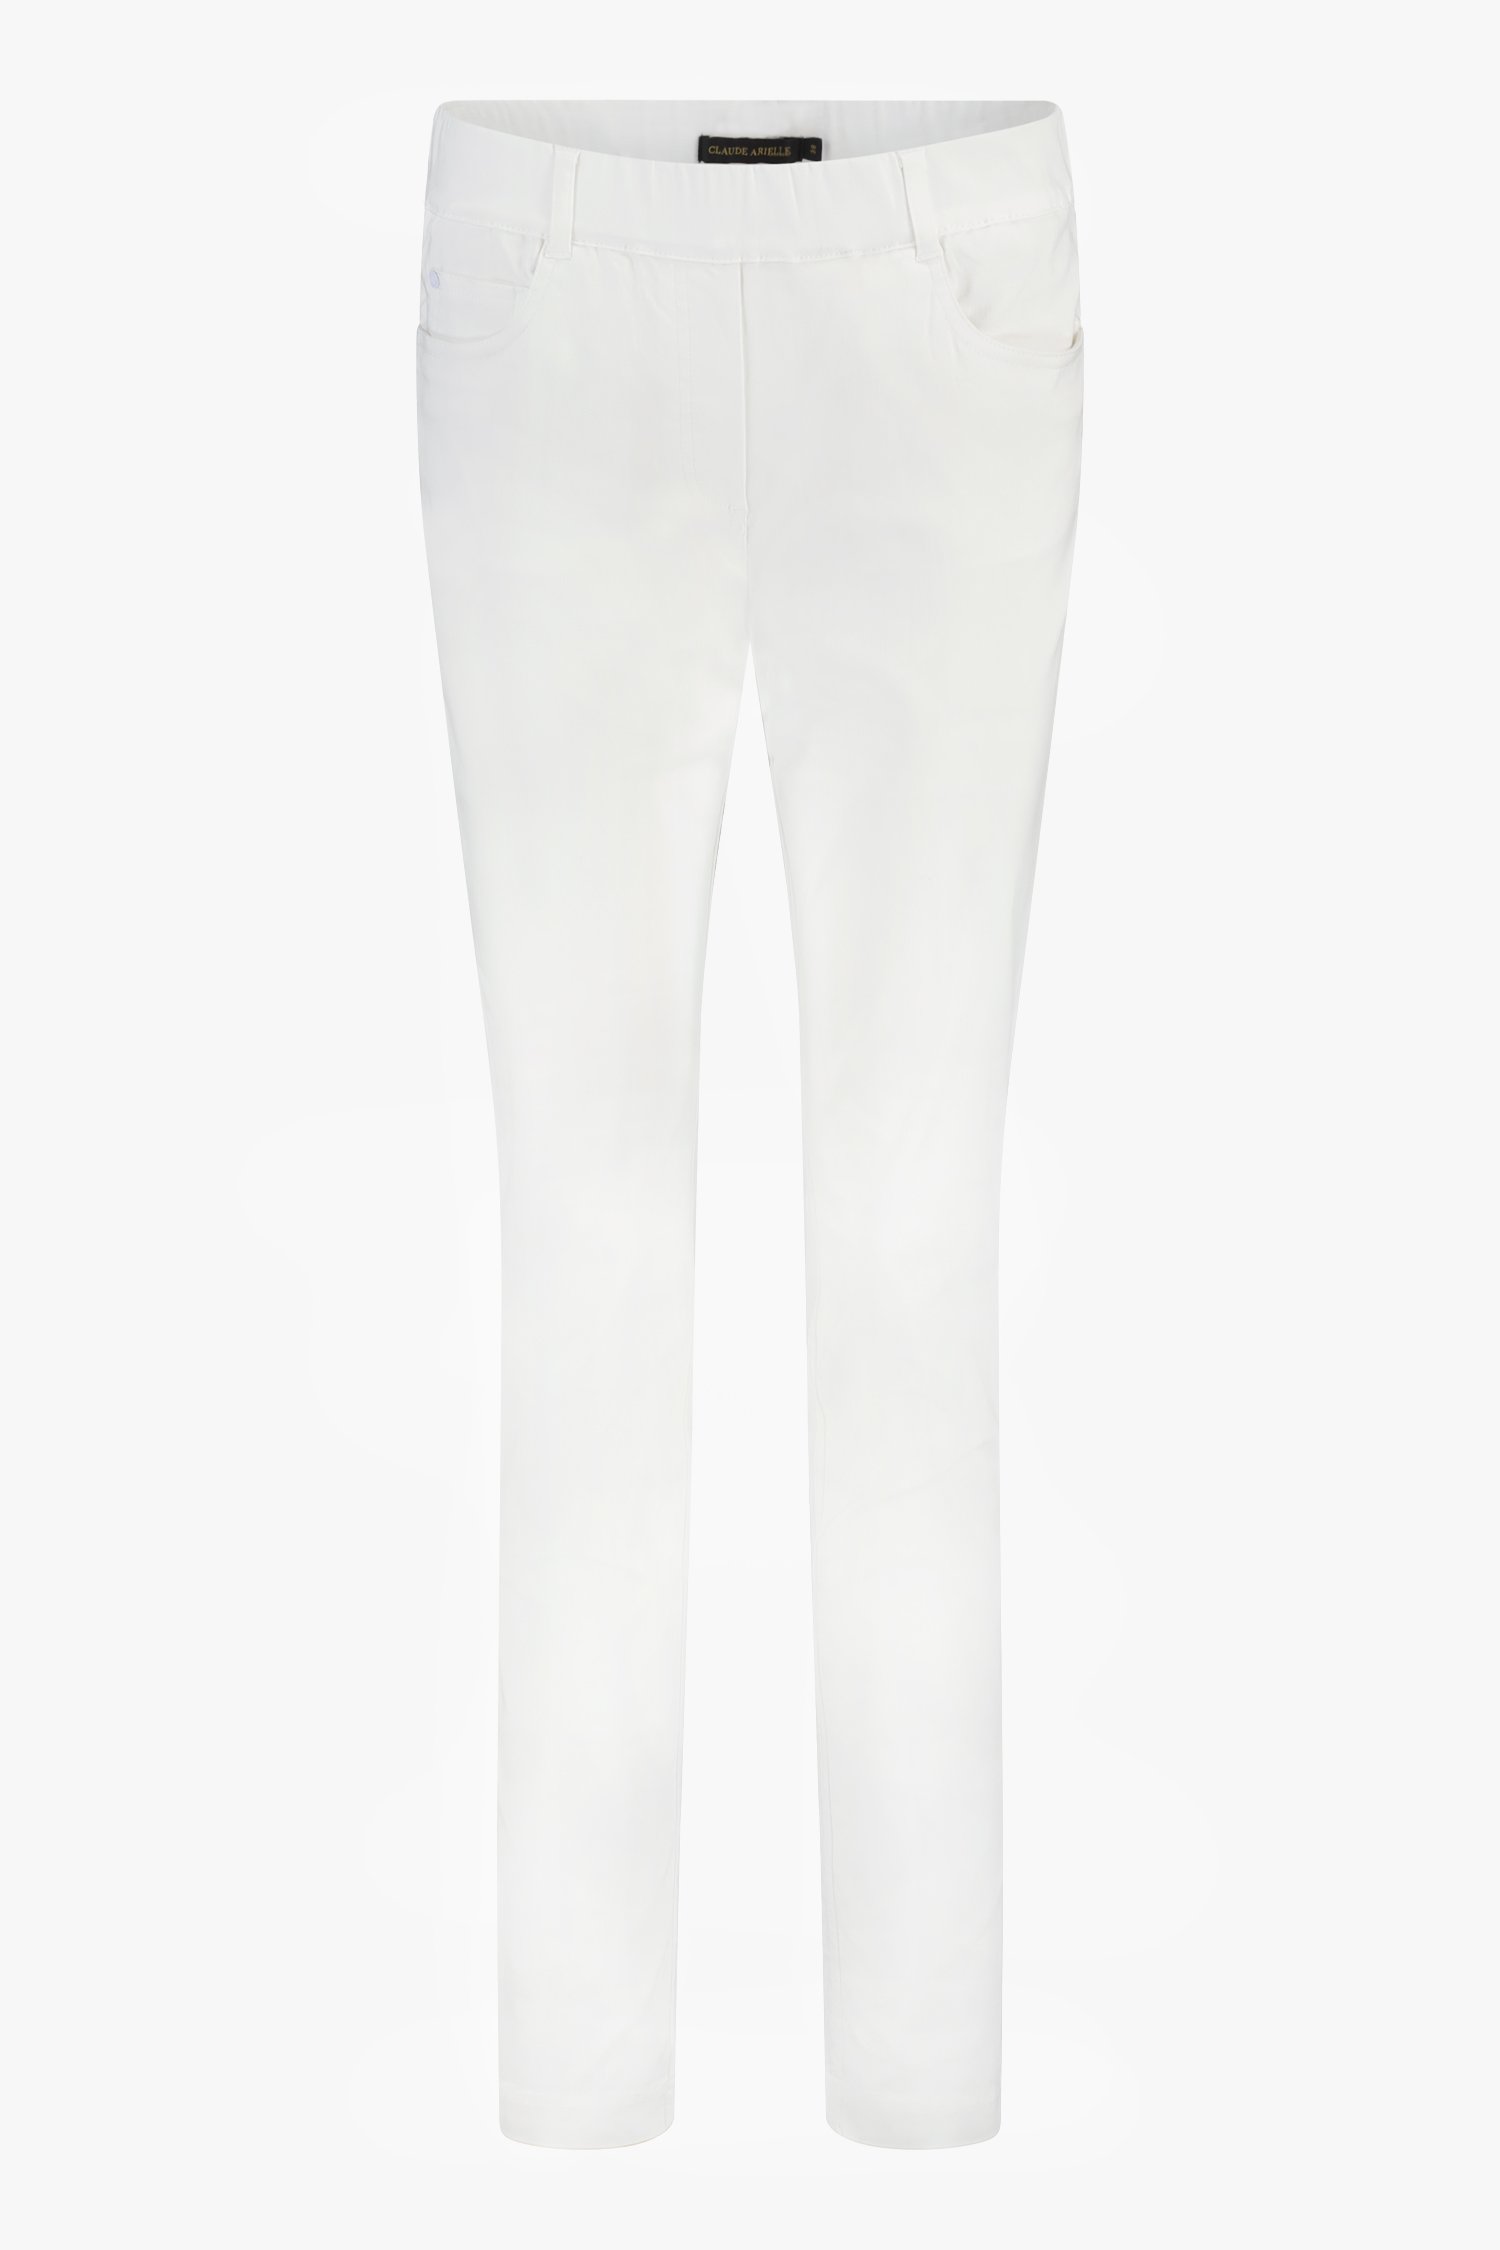 Pantalon stretch blanc avec taille élastiquée	 de Claude Arielle pour Femmes